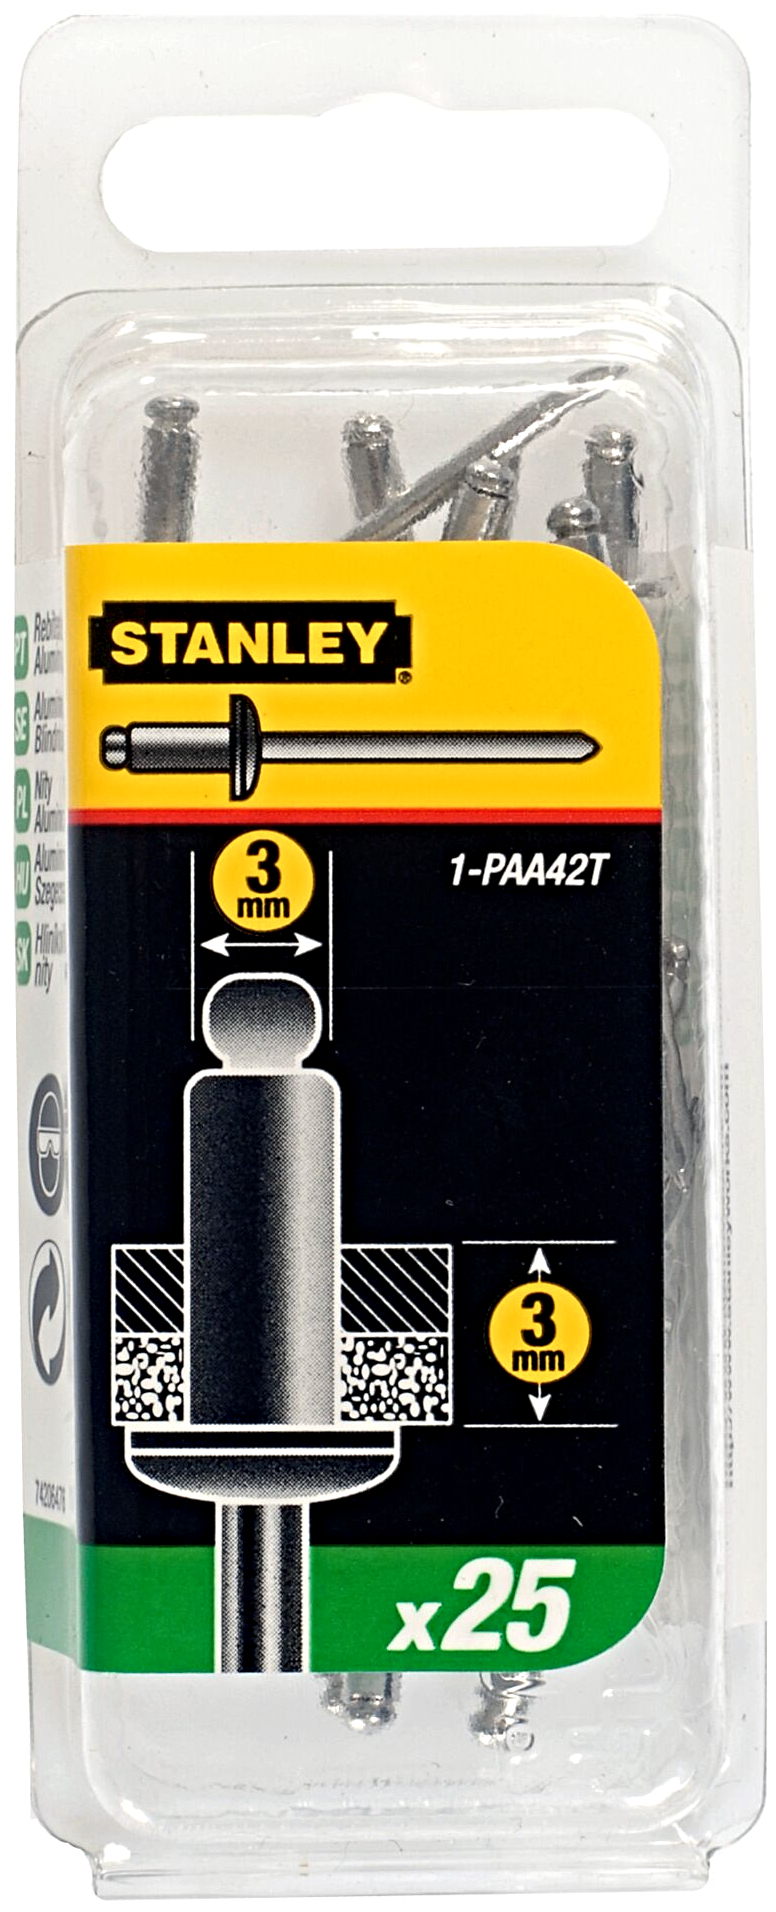 STANLEY 1-PAA42T 3mm hliníkové nýty s ocelovým hřebíkem, délka 3 mm - 25 ks